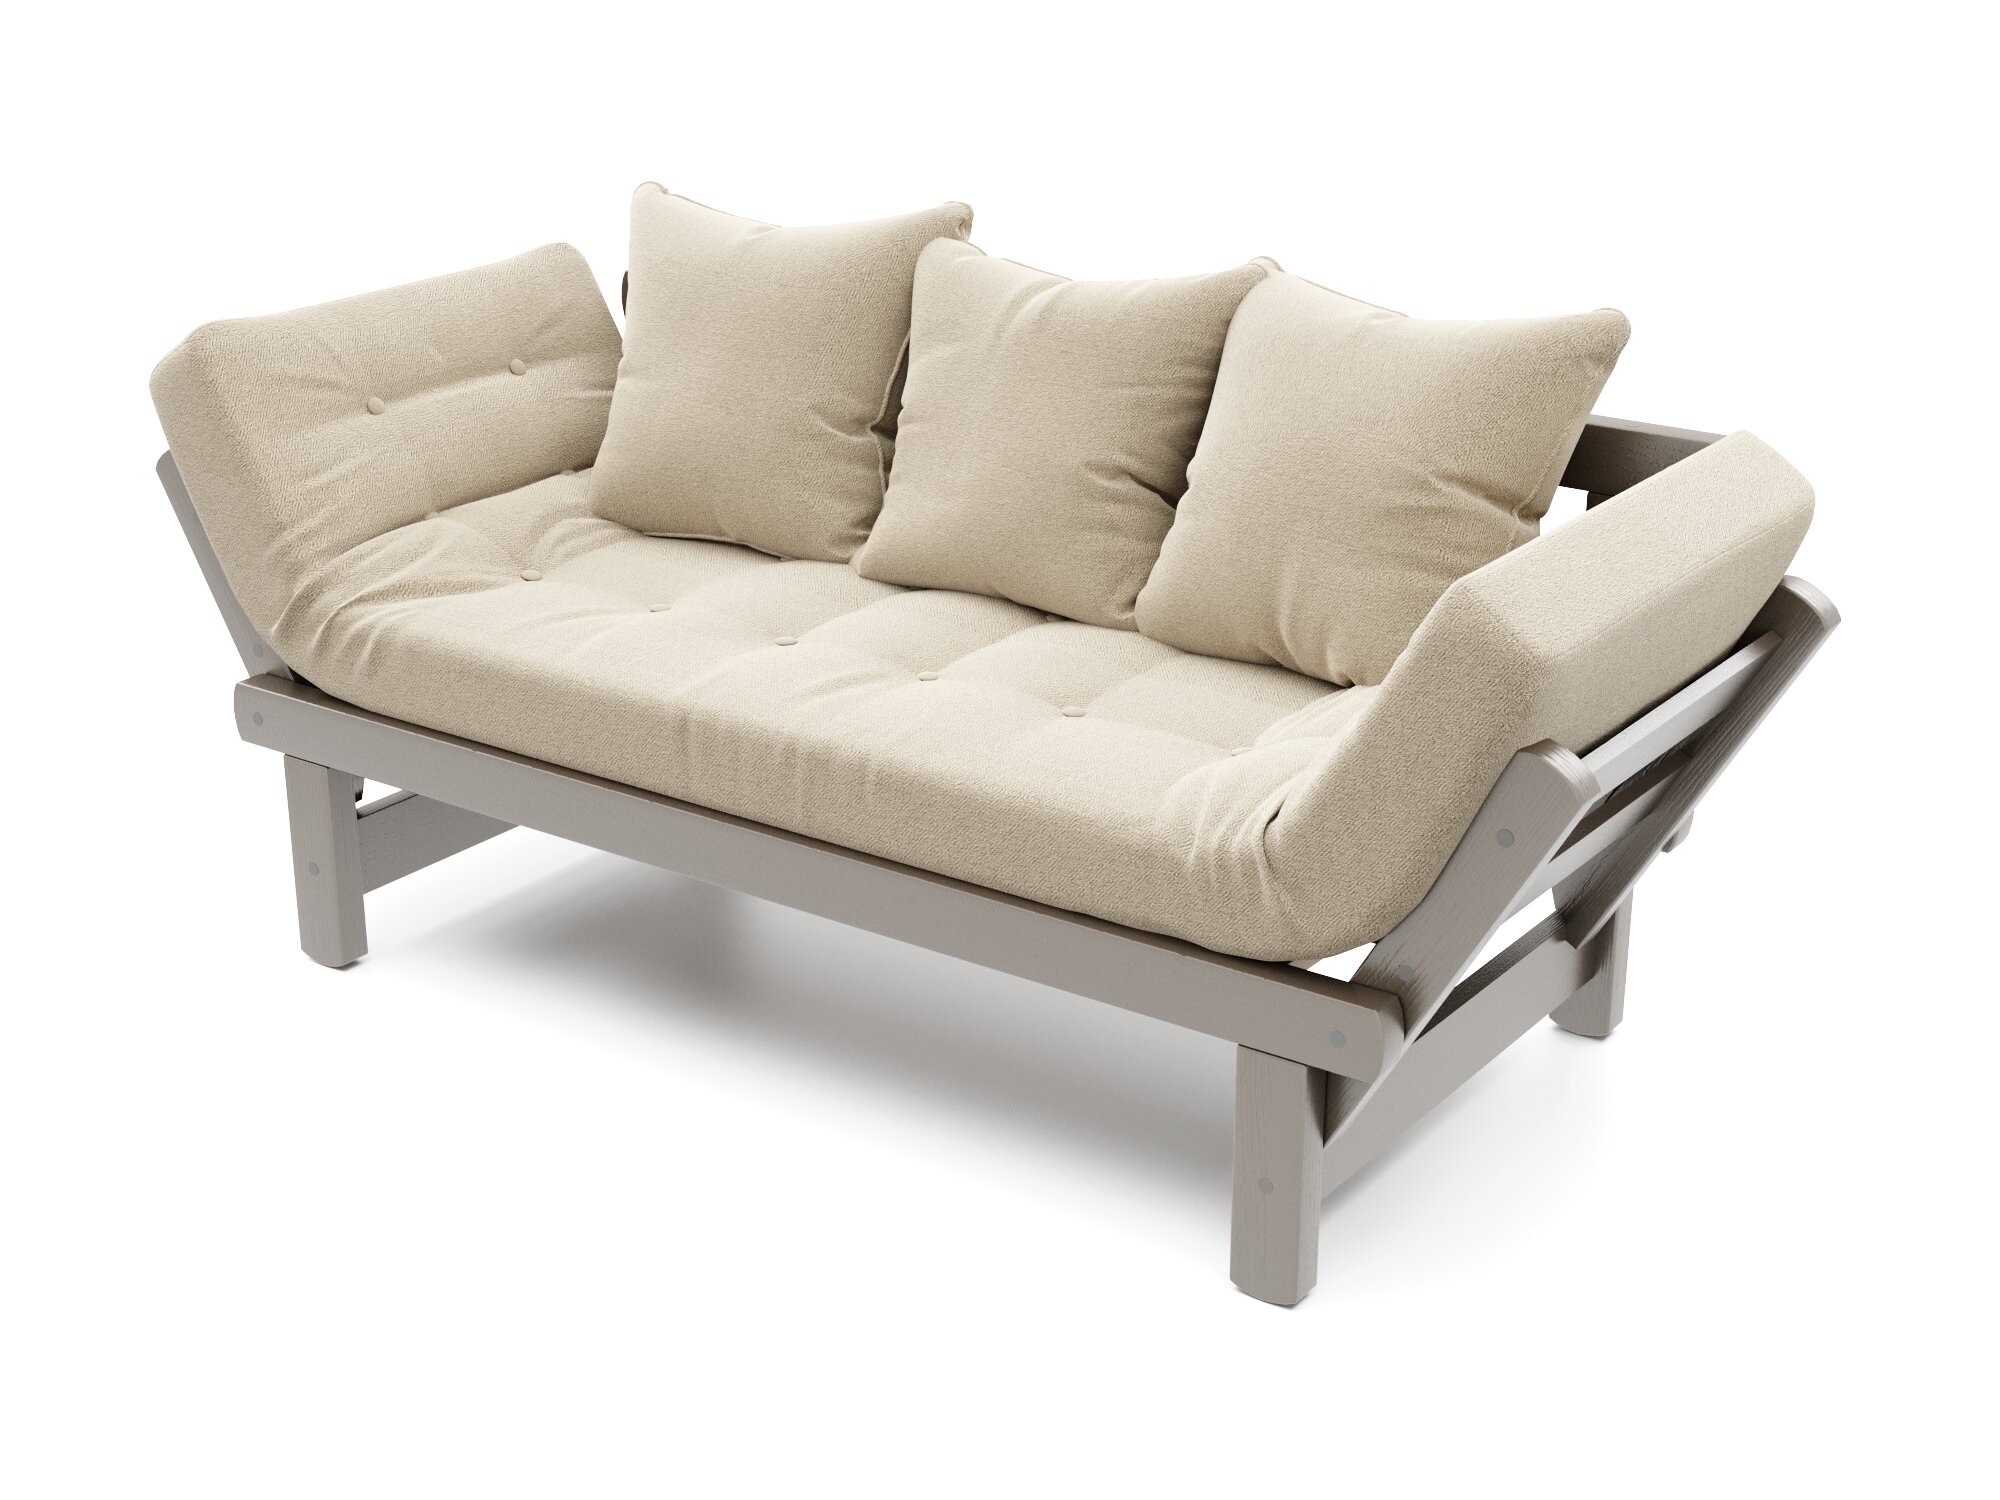 Садовый диван кушетка Soft Element Эльф-С, бежевый-серый, из дерева, раскладной, подушки, рогожка, на террасу, на веранду, для дачи и сада, для бани